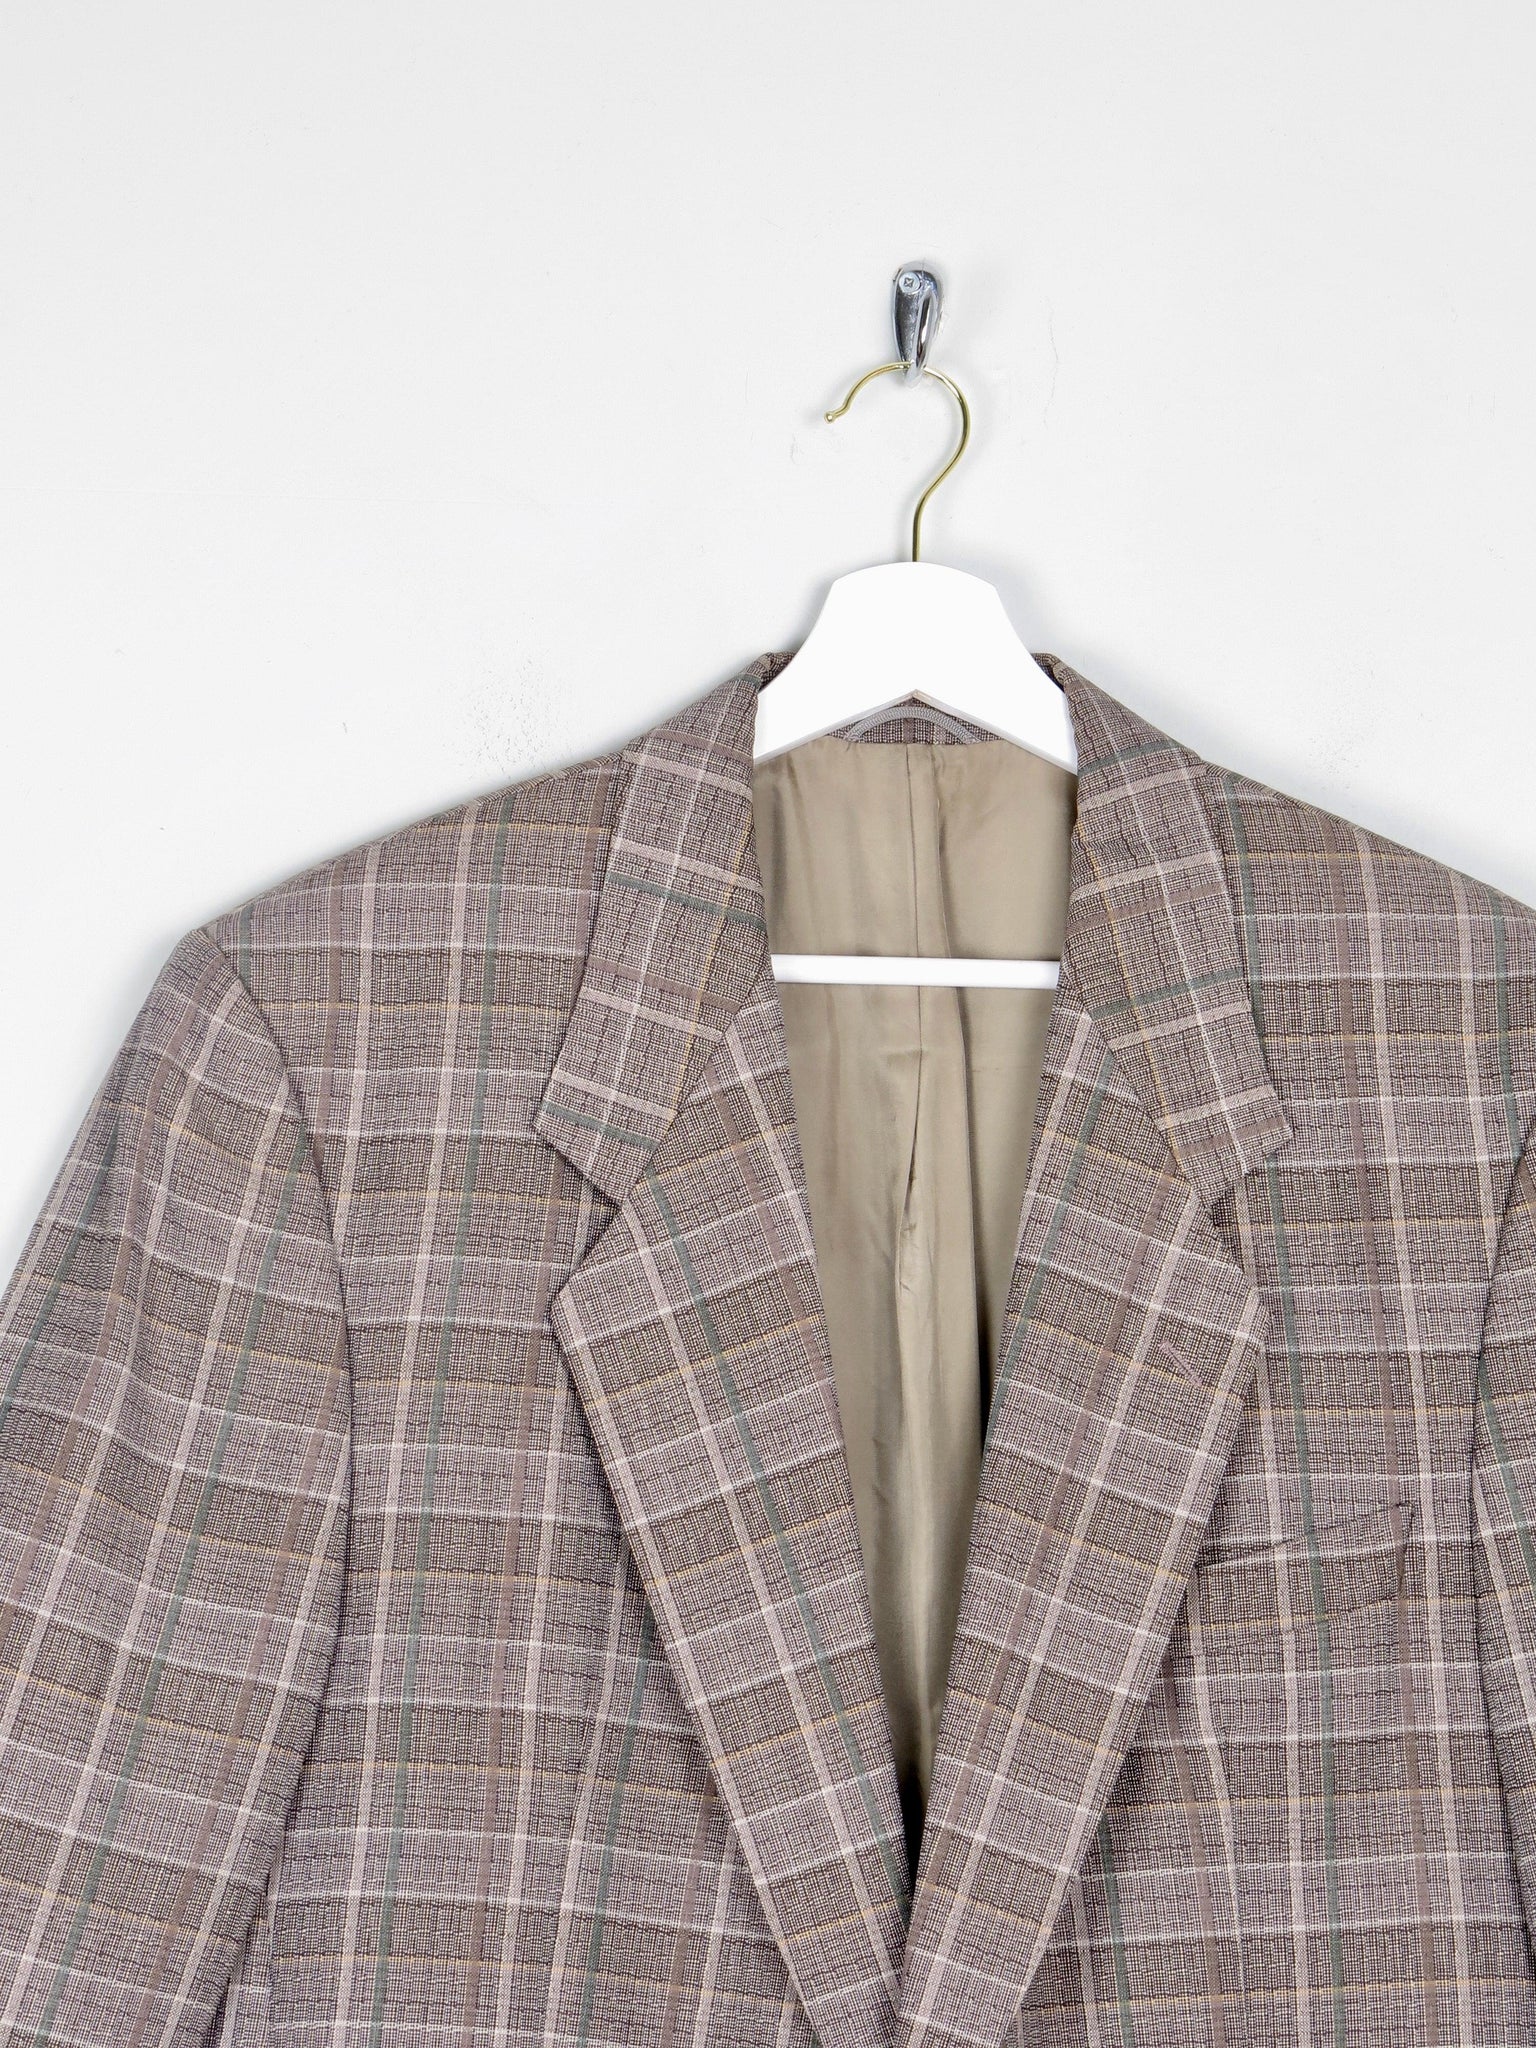 Men's Check Taupe Vintage Jacket 42" - The Harlequin